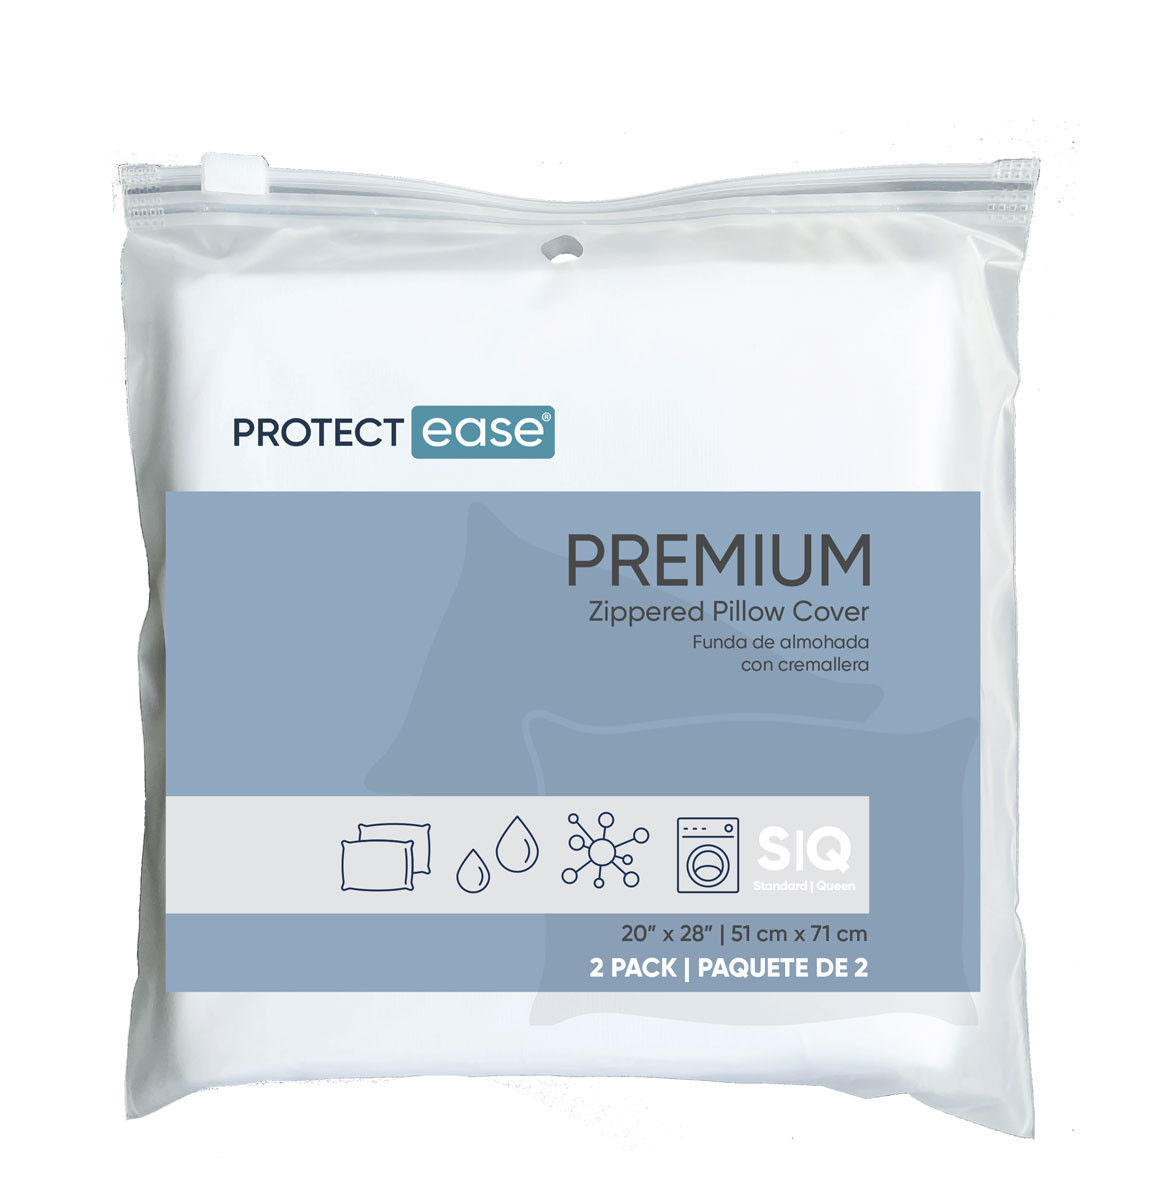 Does the PREMIUM LINE pillow encasement offer allergen protection?